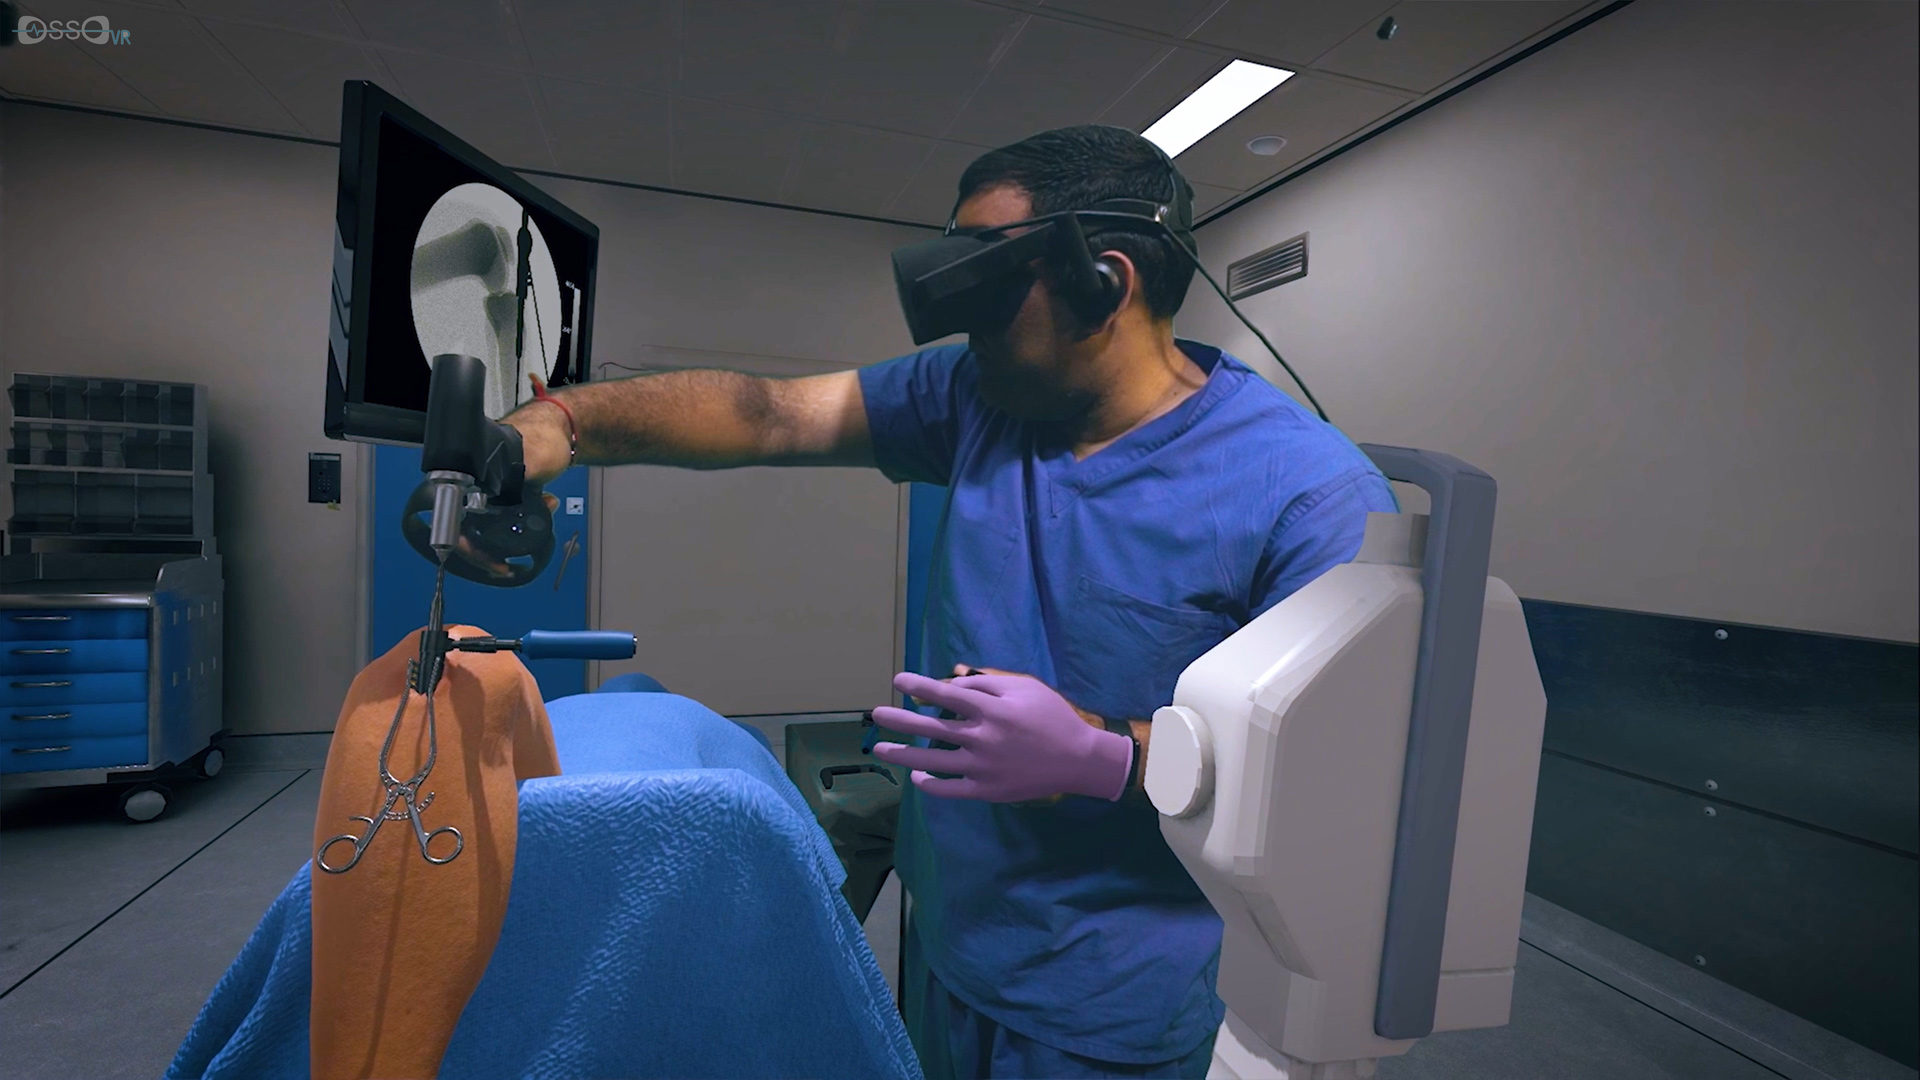 surgeon simulator vr oculus quest